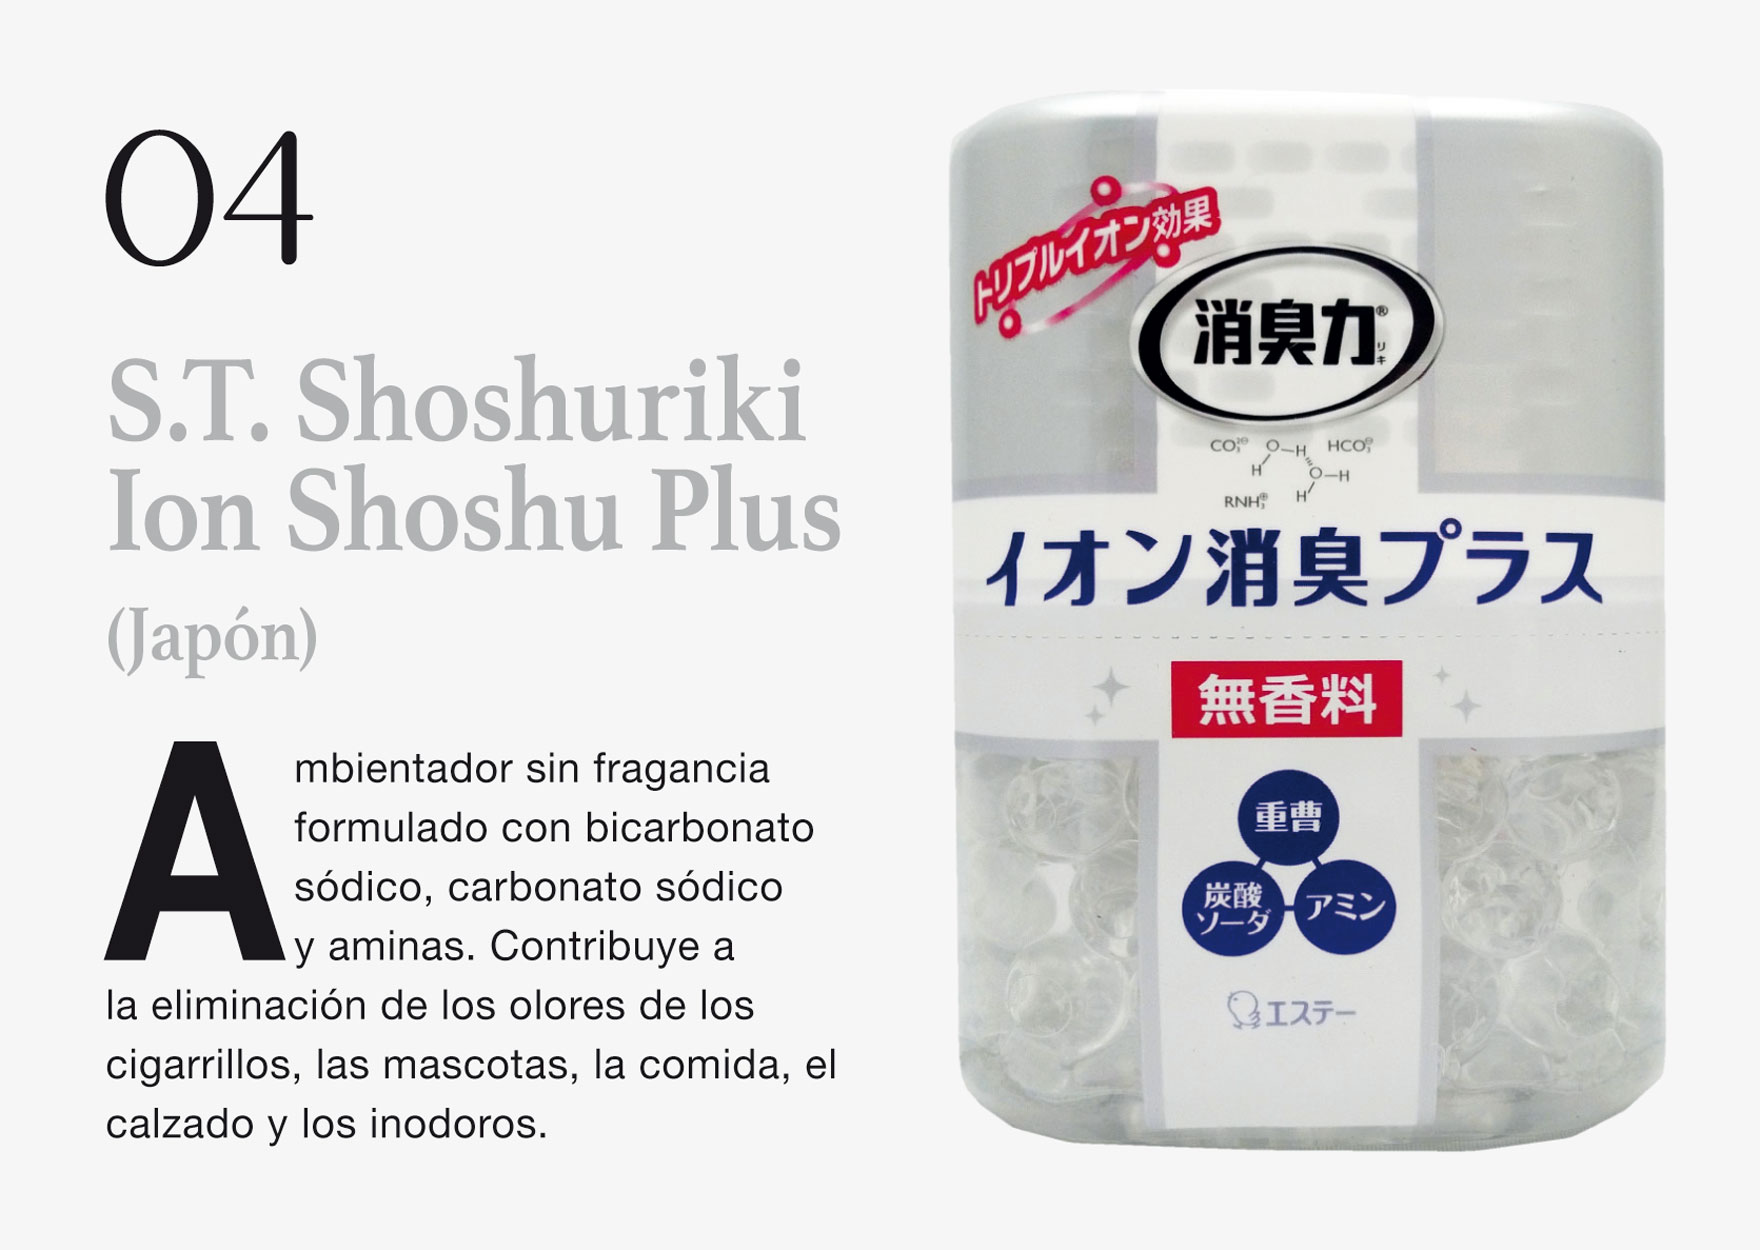 S.T. Shoshuriki Ion Shoshu Plus (Japón) 